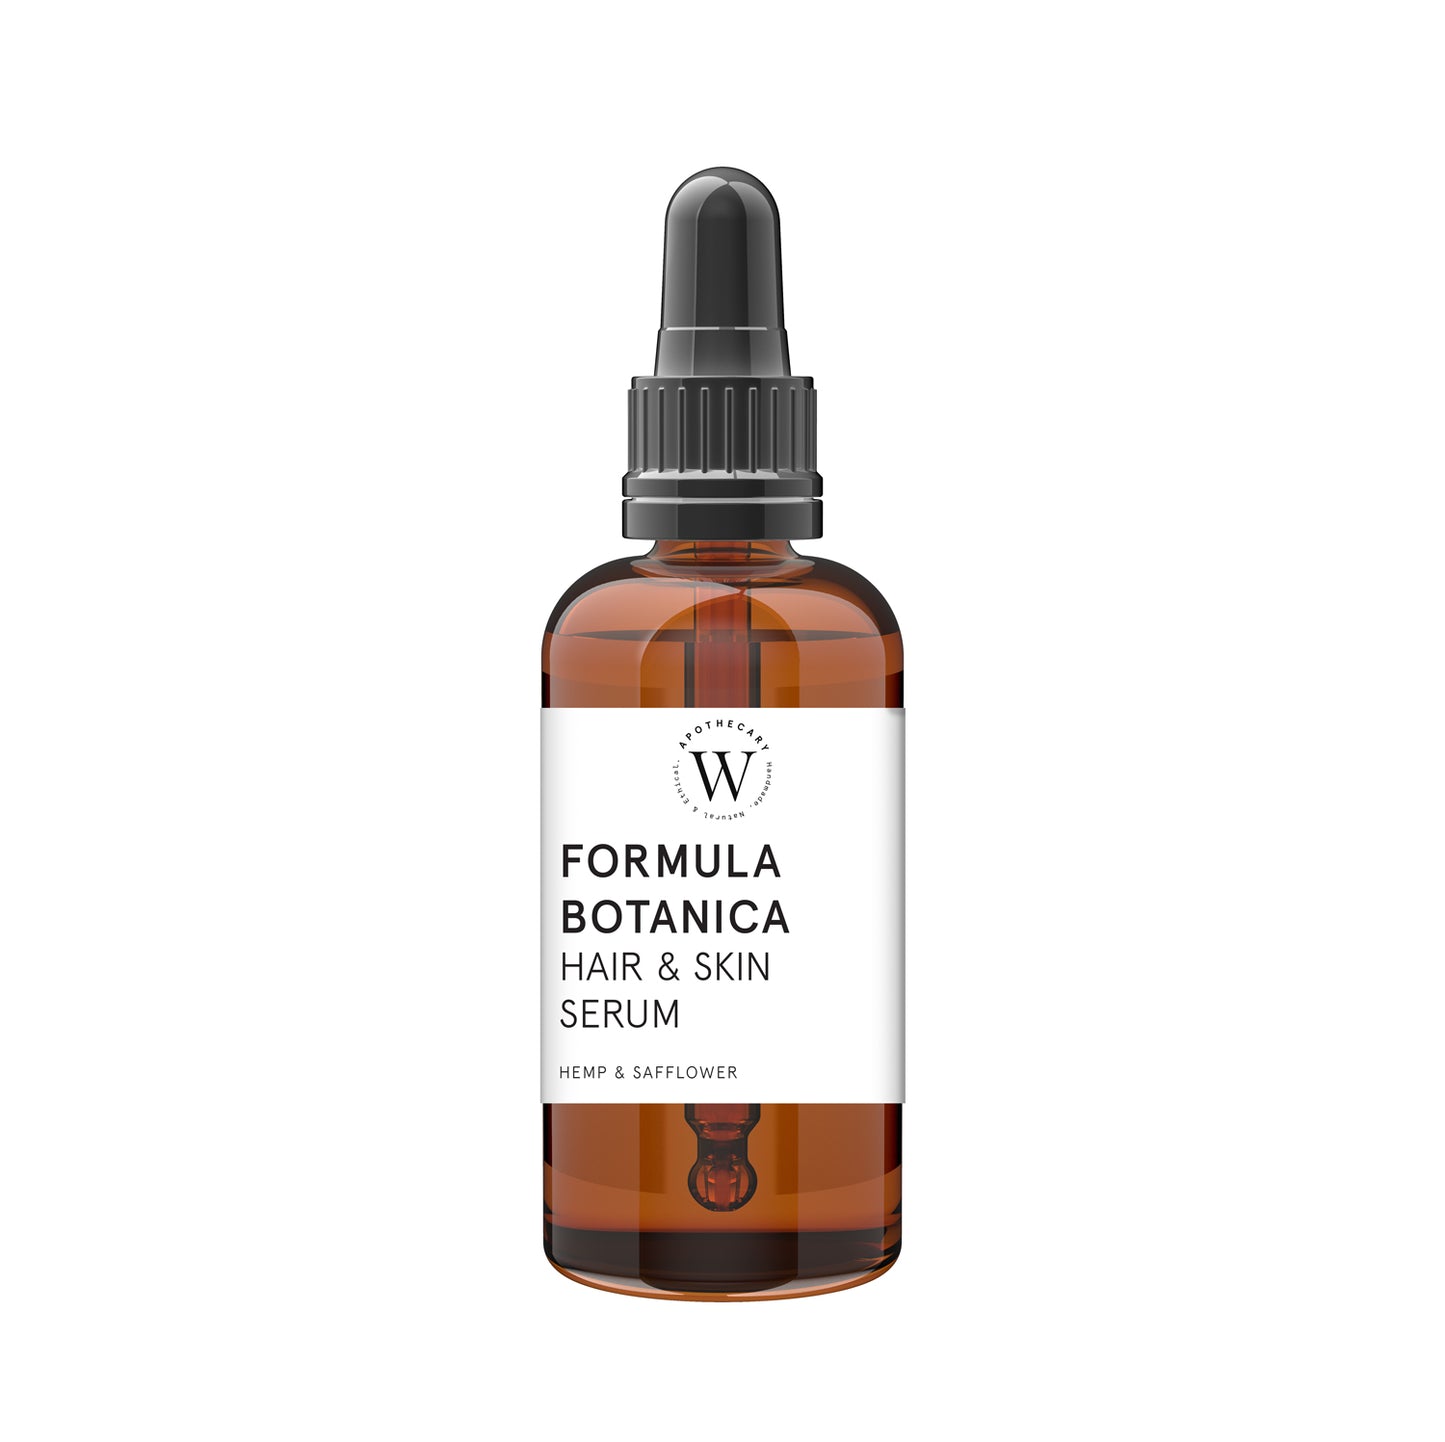 FORMULA BOTANICA - Hair & Skin Serum